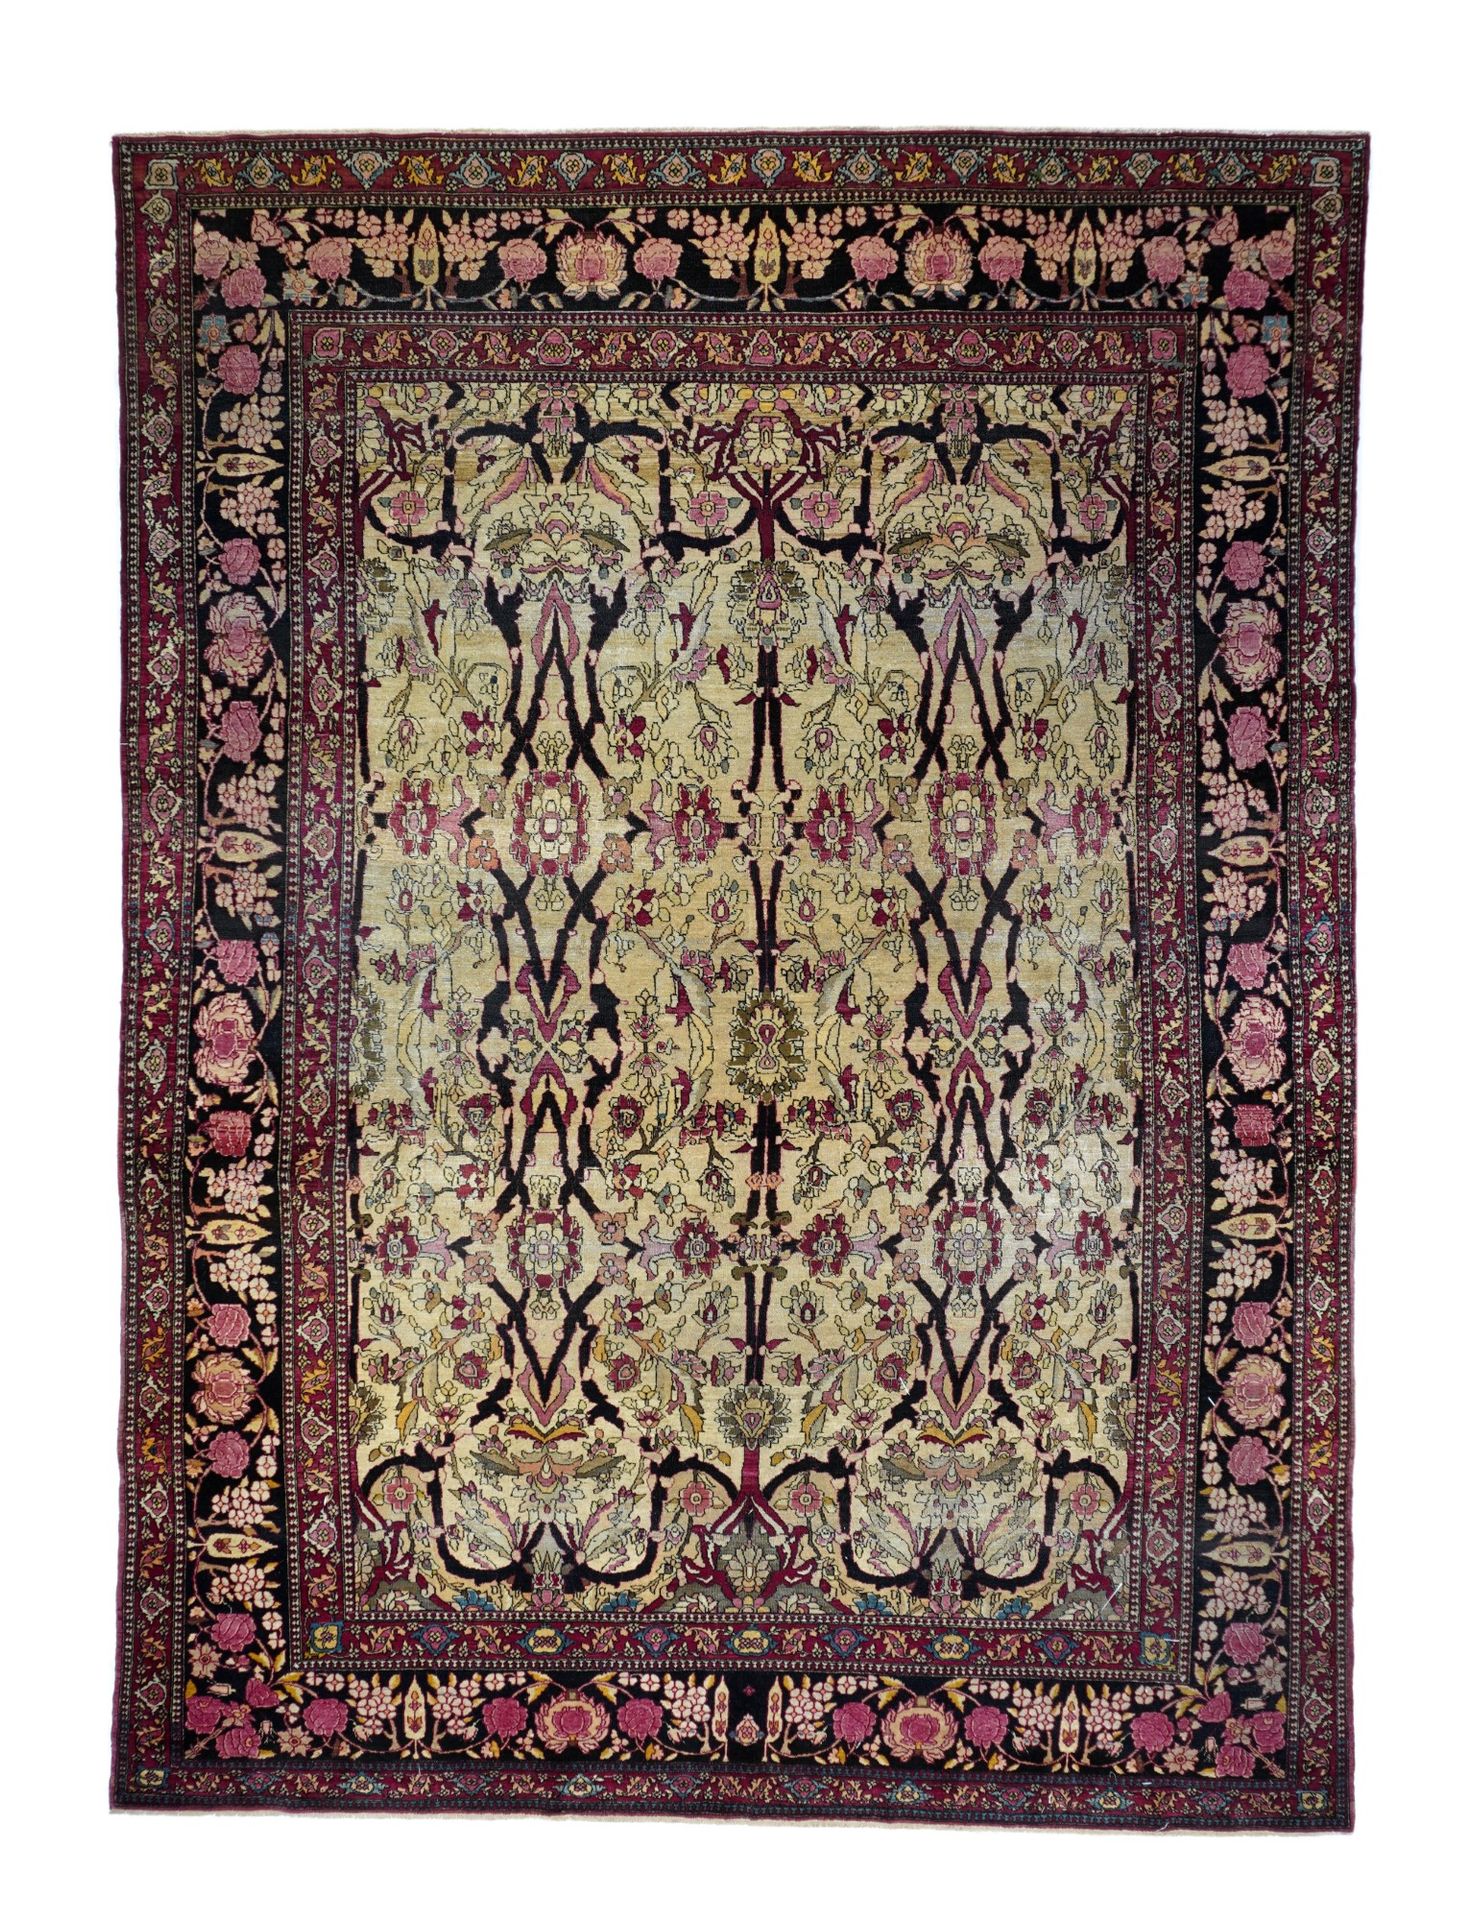 Null Antique Tehran Rug, 9' x 12'9" (2.74 x 3.89 M)